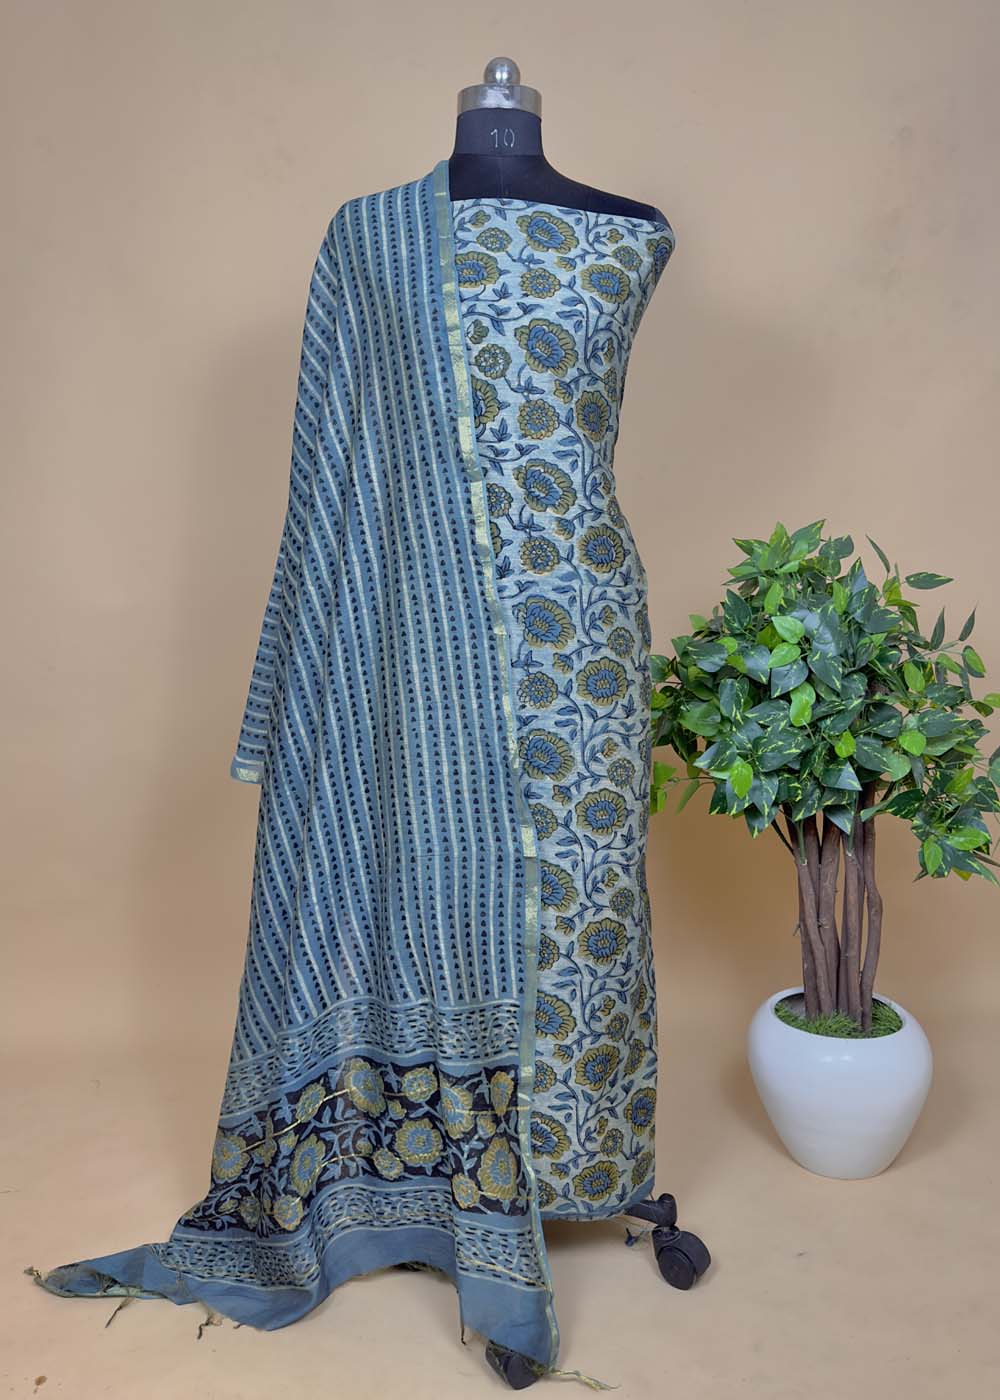 Baroda Block Prints in Salatwada,Vadodara - Best Bandhani Dress Material  Manufacturers in Vadodara - Justdial